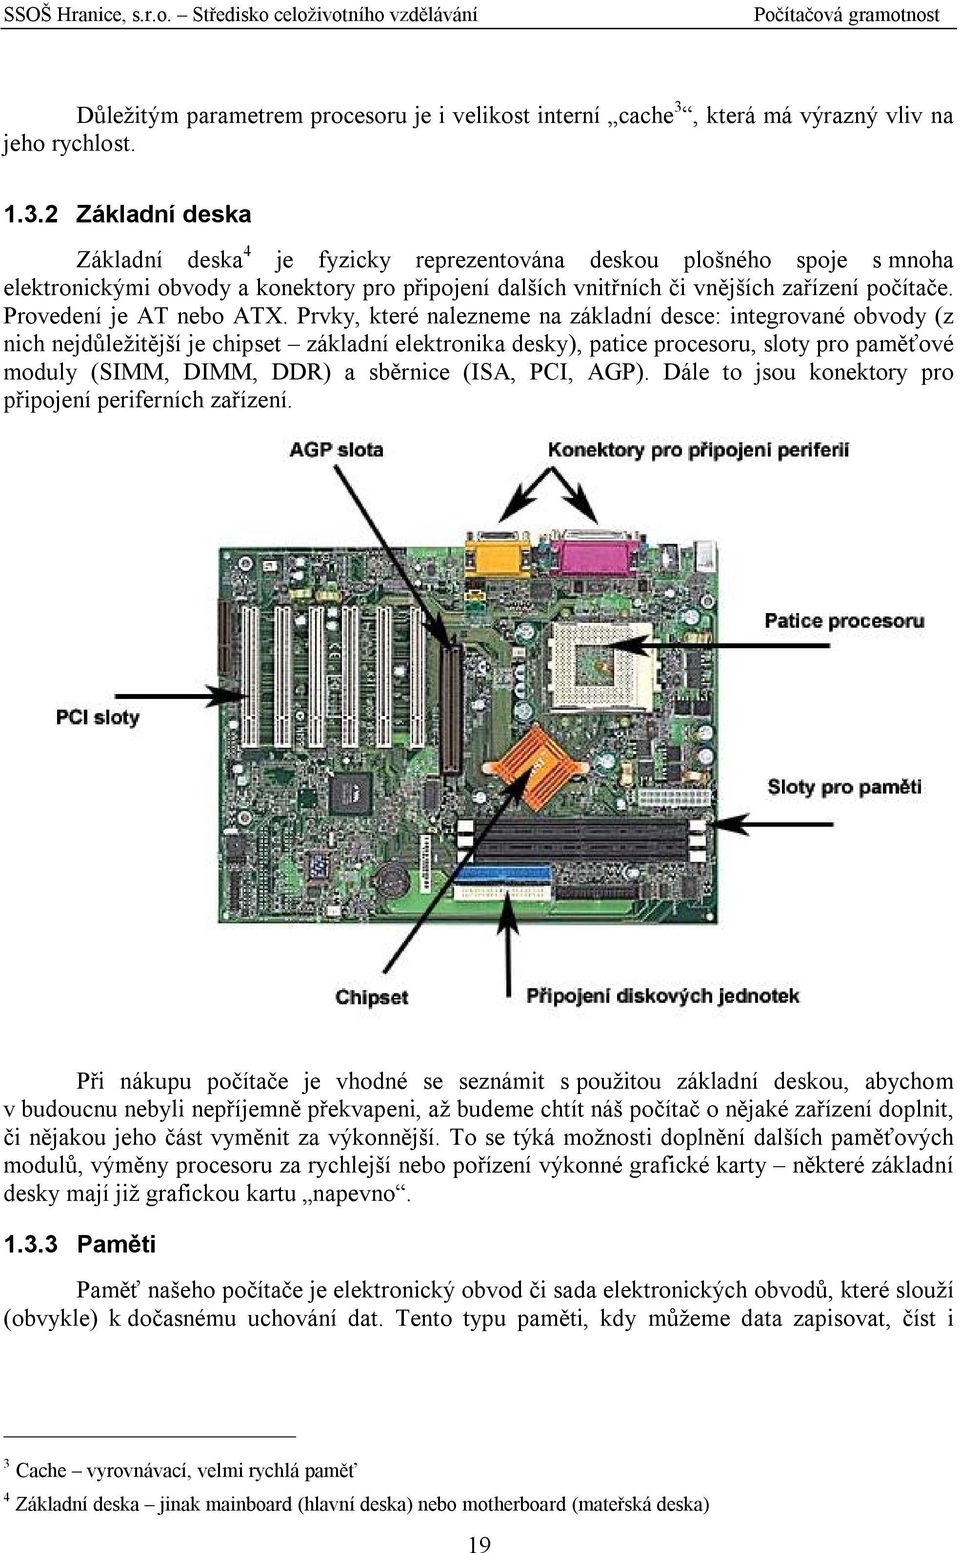 2 Základní deska Základní deska 4 je fyzicky reprezentována deskou plošného spoje s mnoha elektronickými obvody a konektory pro připojení dalších vnitřních či vnějších zařízení počítače.